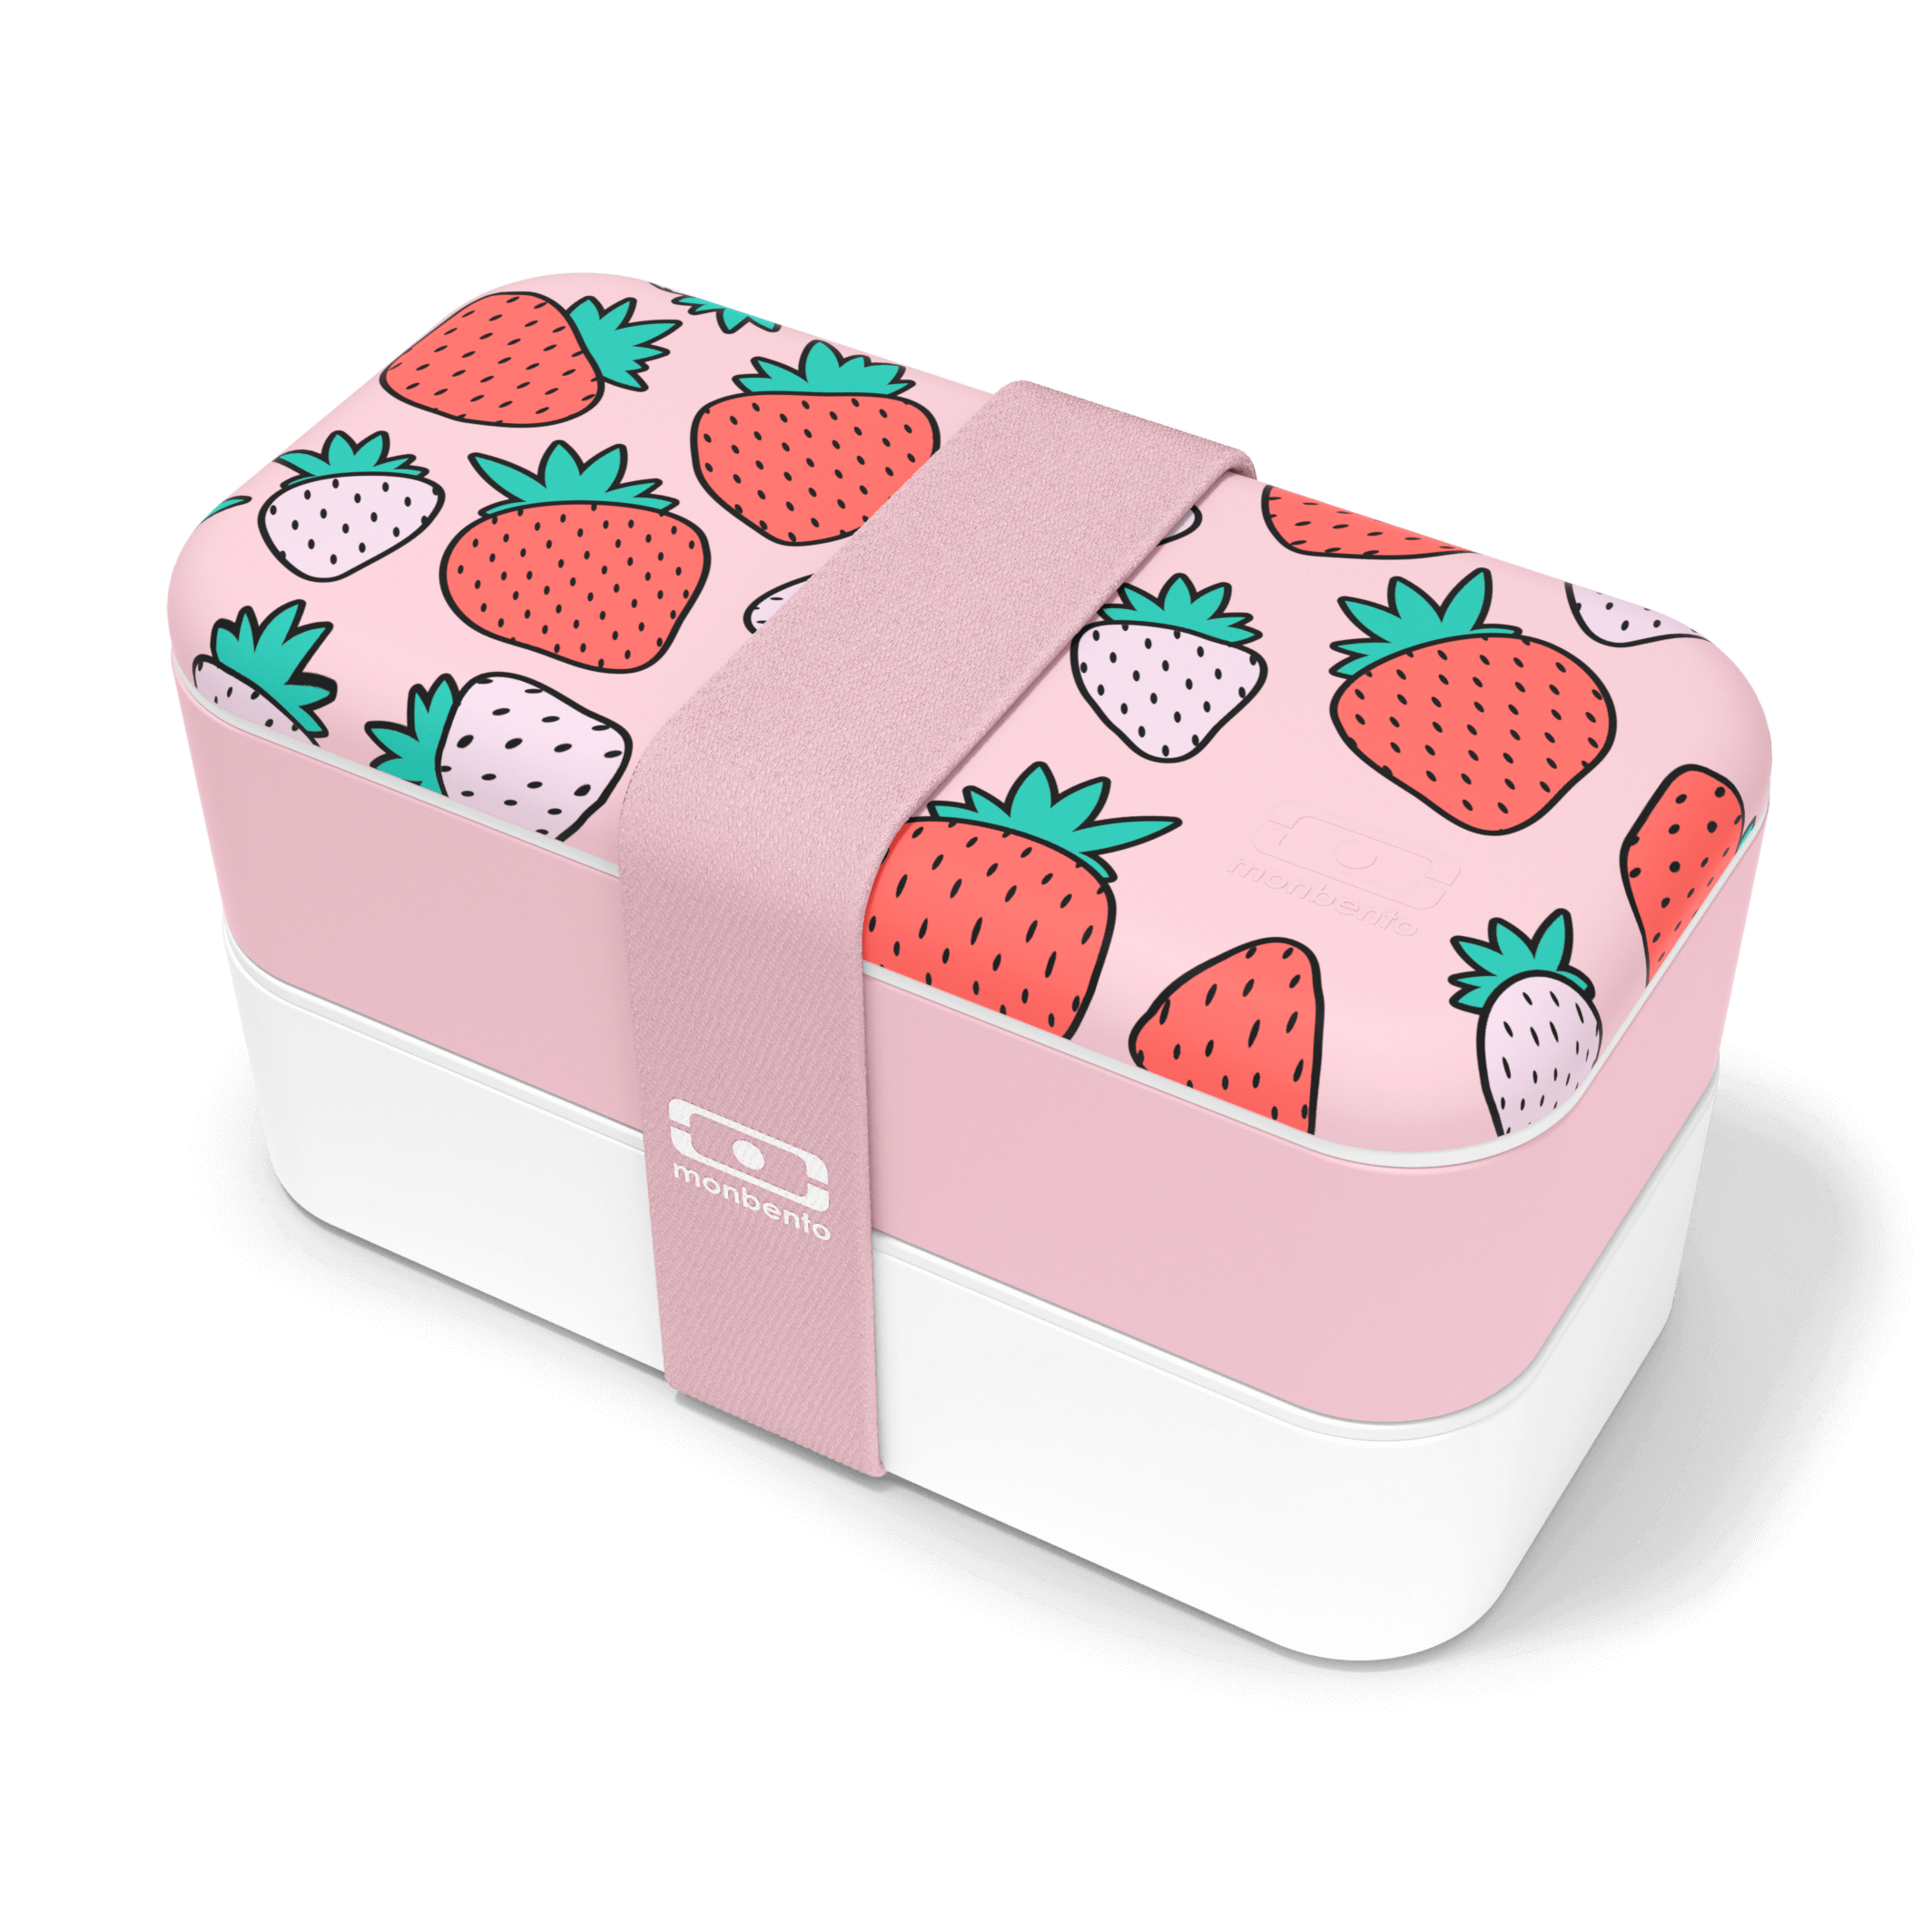 MB原創長方形雙層便當盒－芝芝莓莓